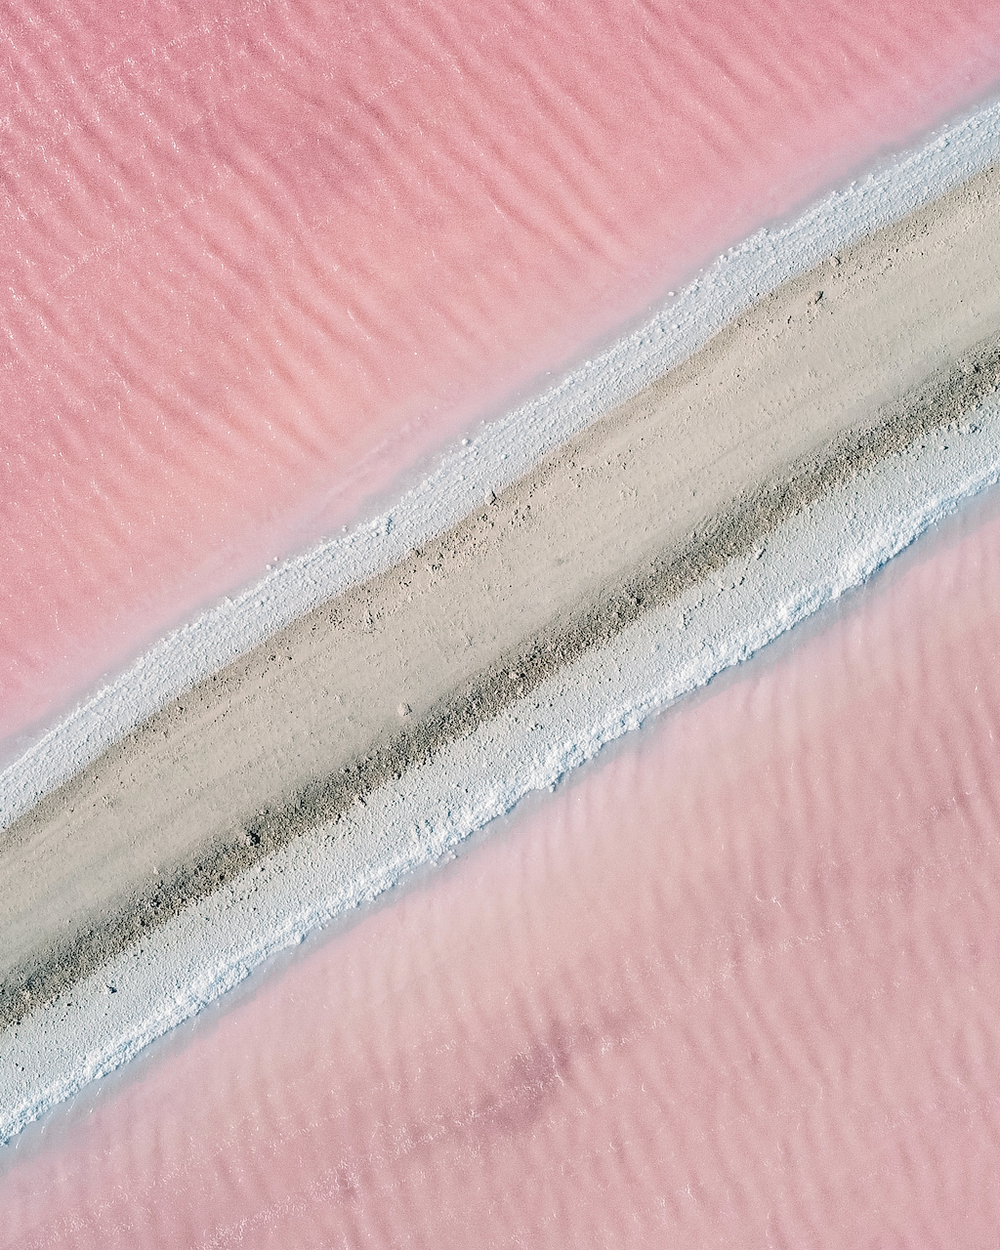 Pink salt pans seen by drone - Bonaire - ABC Islands